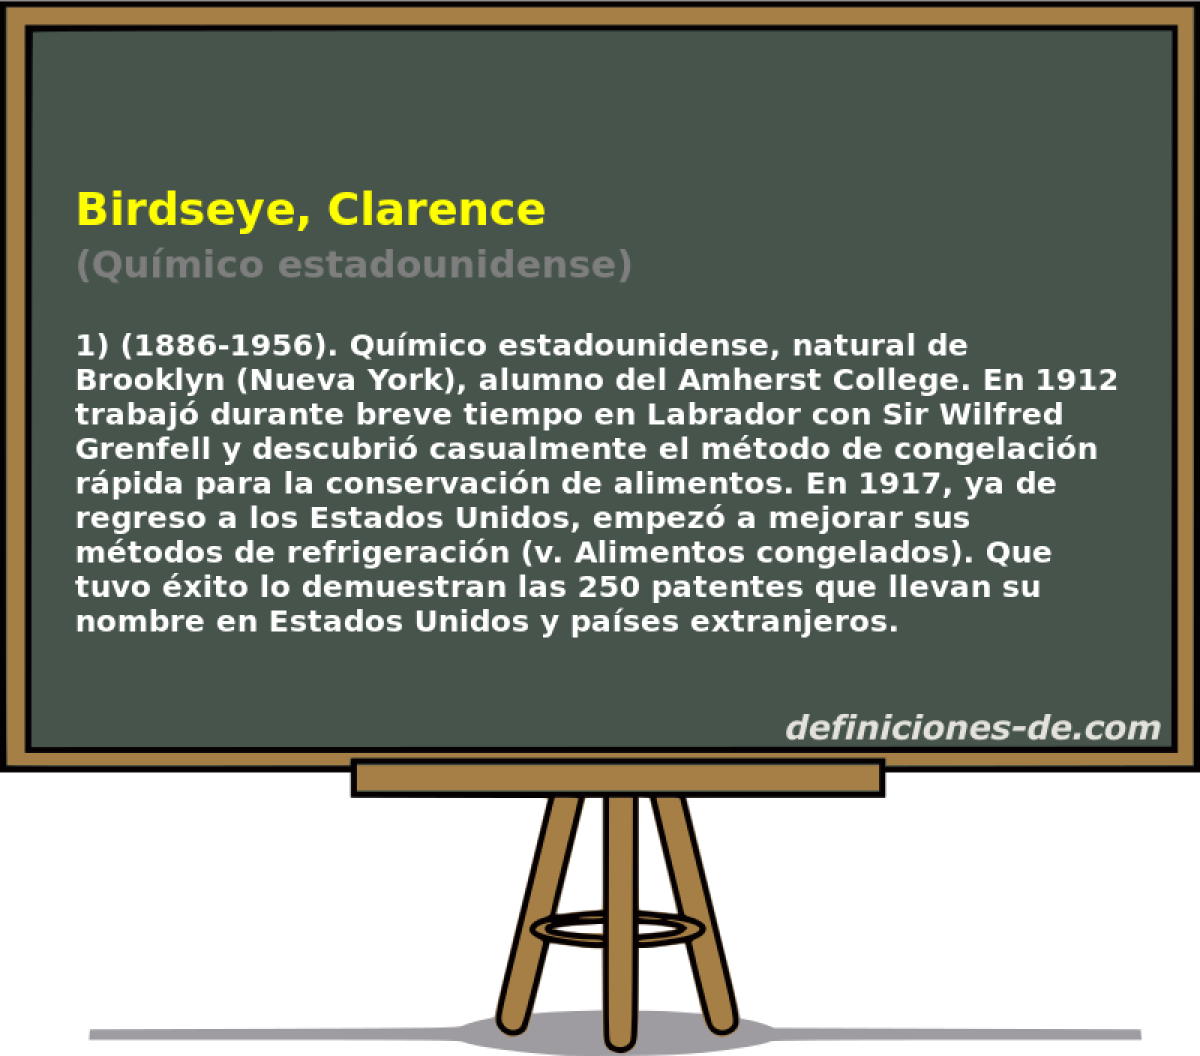 Birdseye, Clarence (Qumico estadounidense)